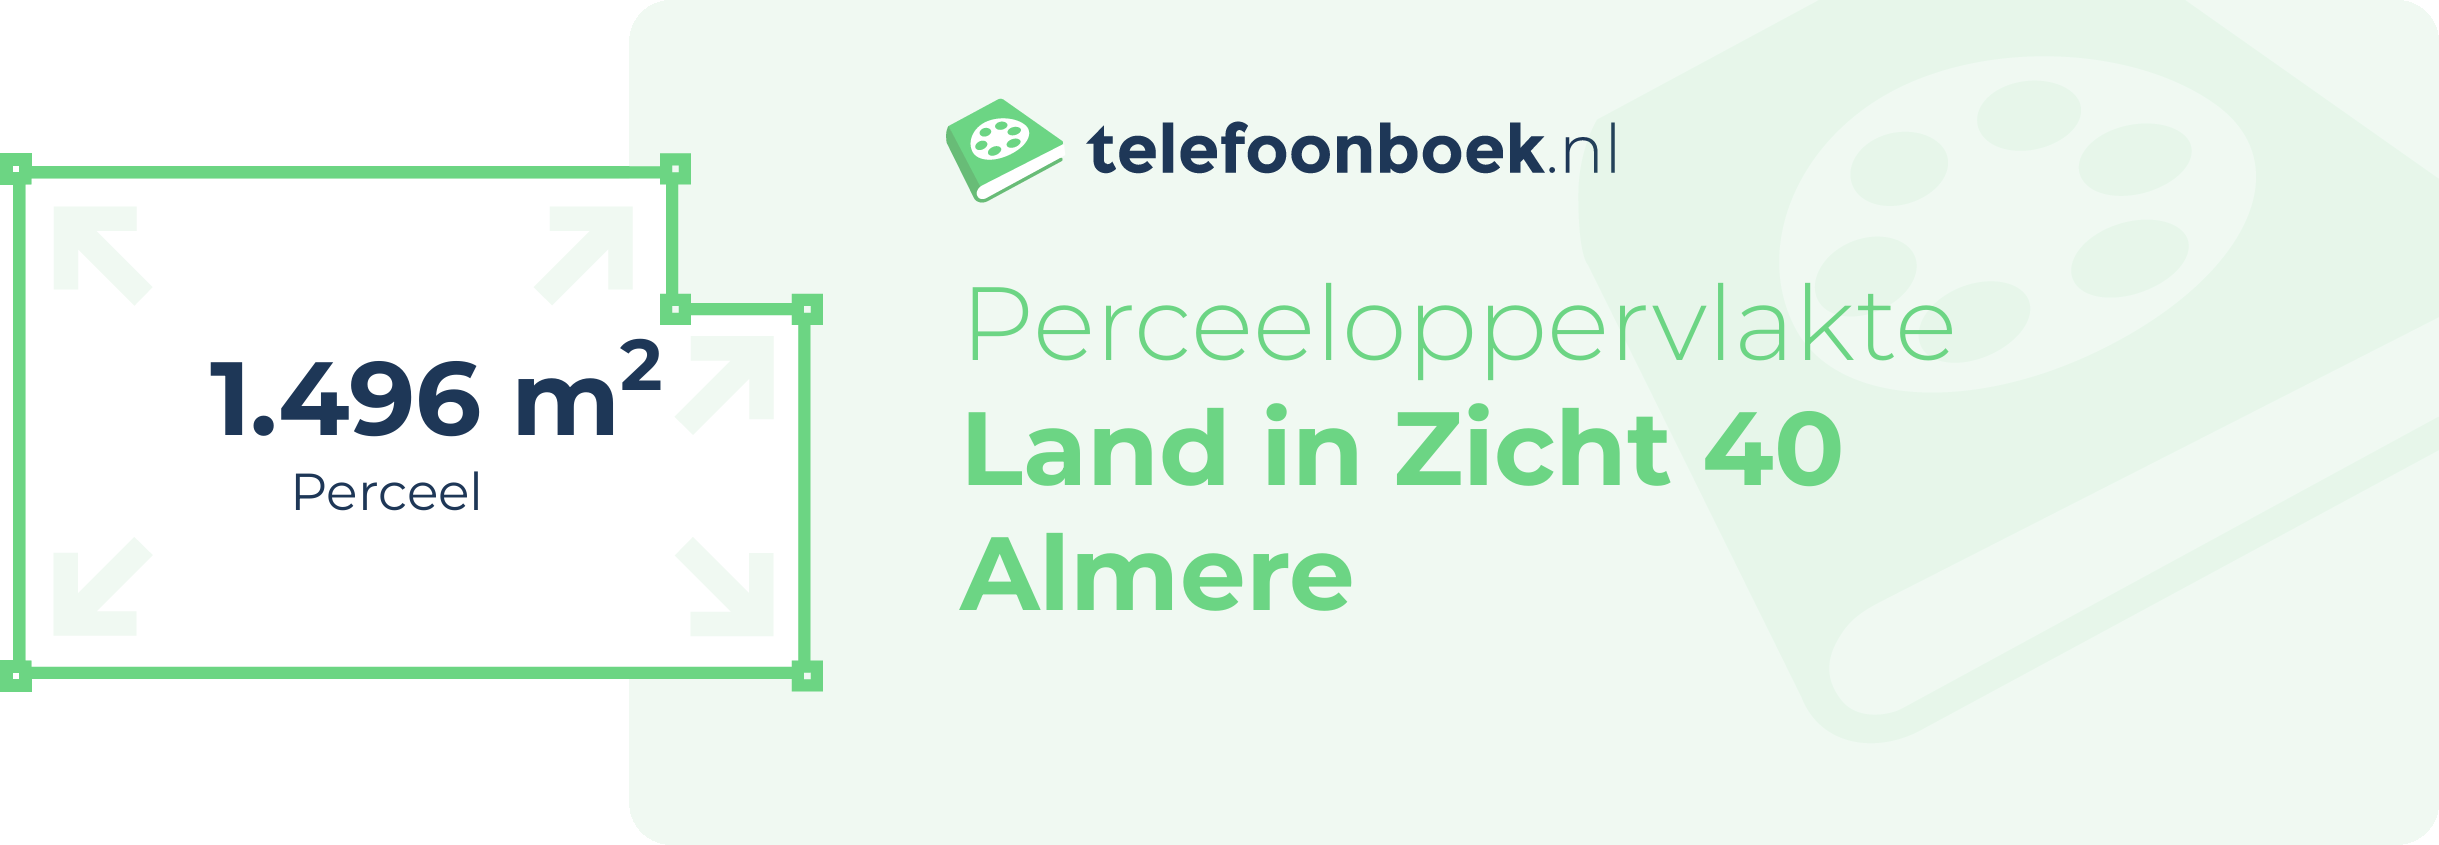 Perceeloppervlakte Land In Zicht 40 Almere